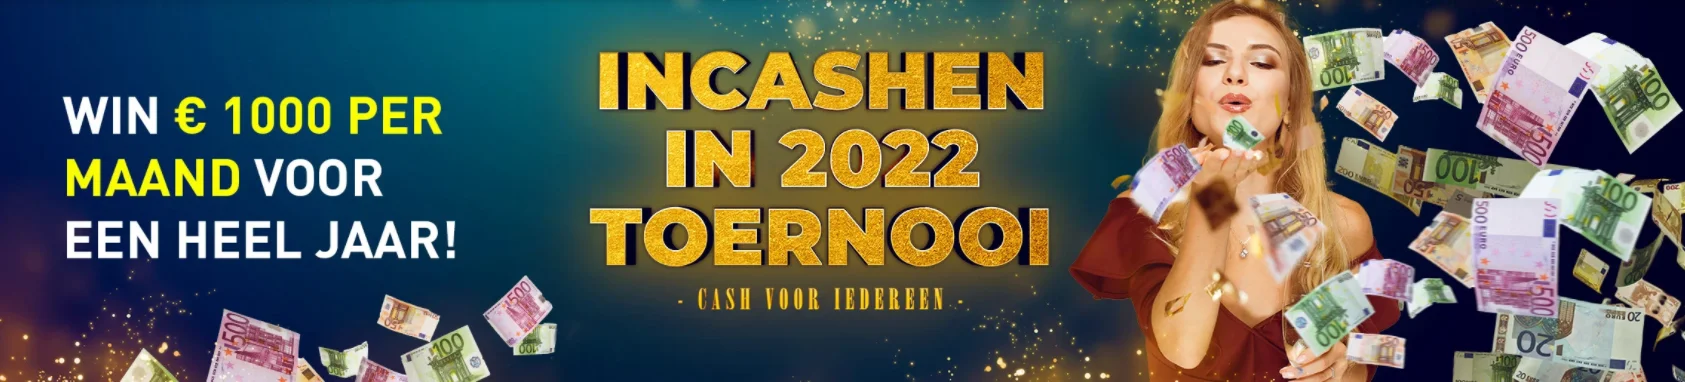 Incashen in 2022 Toernooi Casino 777 online speelhal Videoslot Slot games spellen Elke maand €1.000 2022 Nieuwjaar